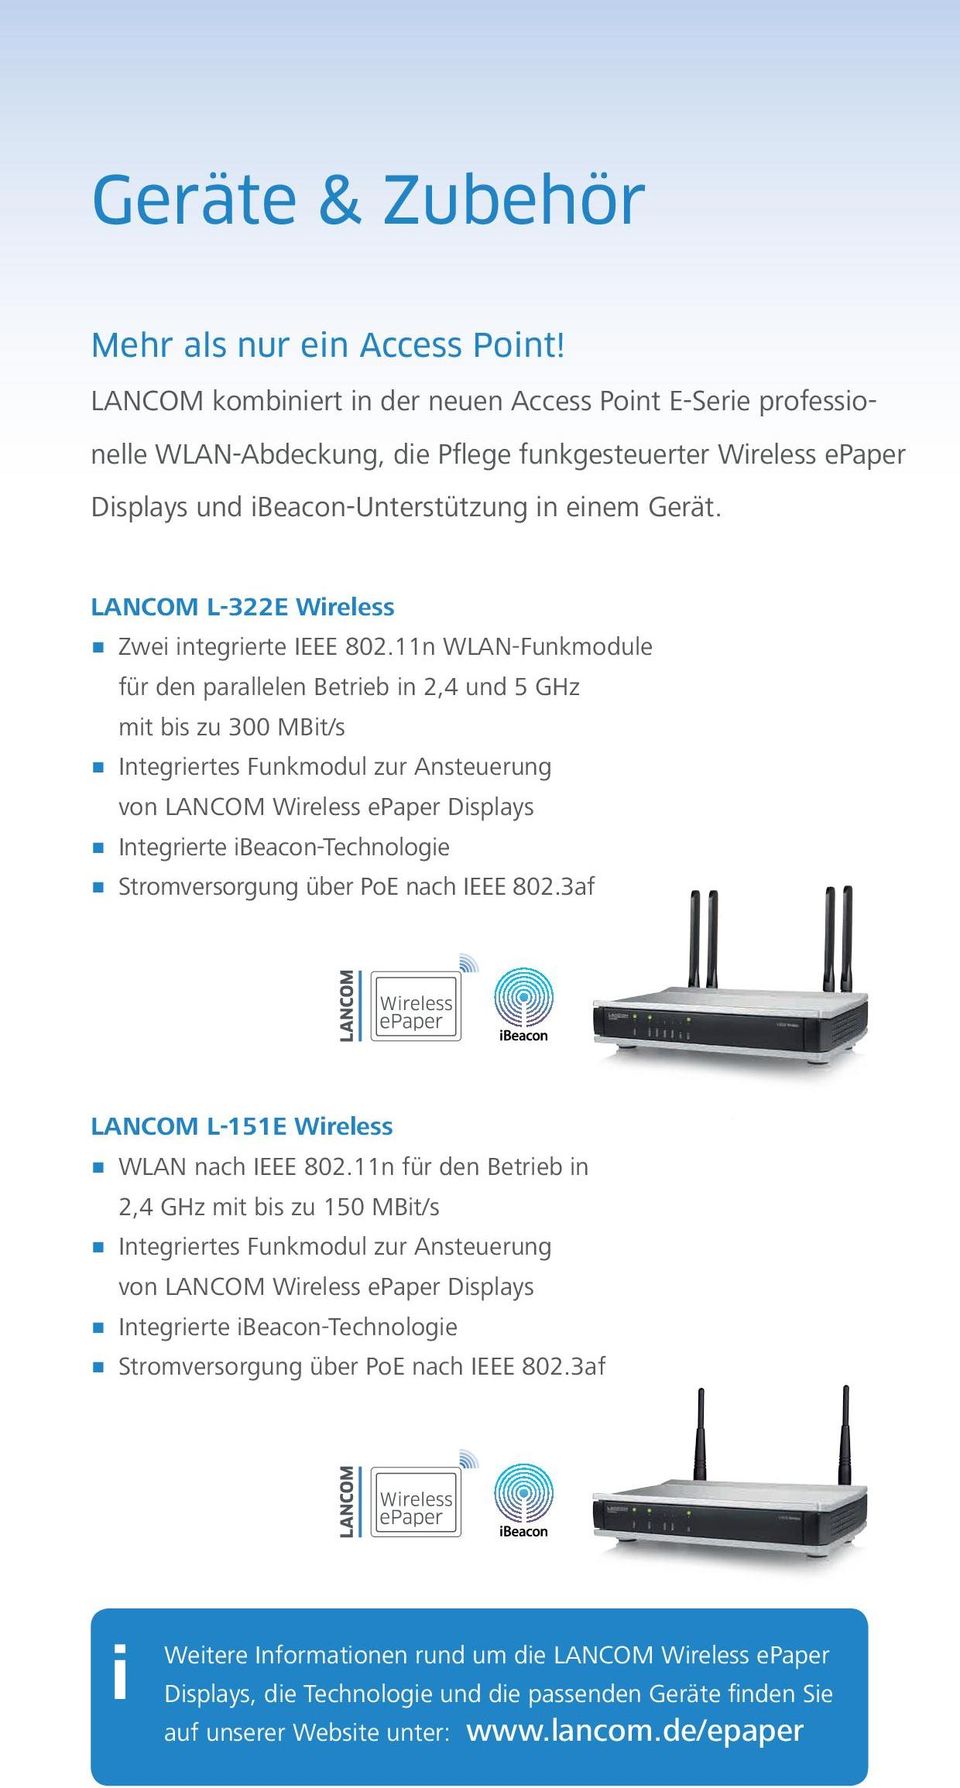 LANCOM L-322E Wireless 1 Zwei integrierte IEEE 802.